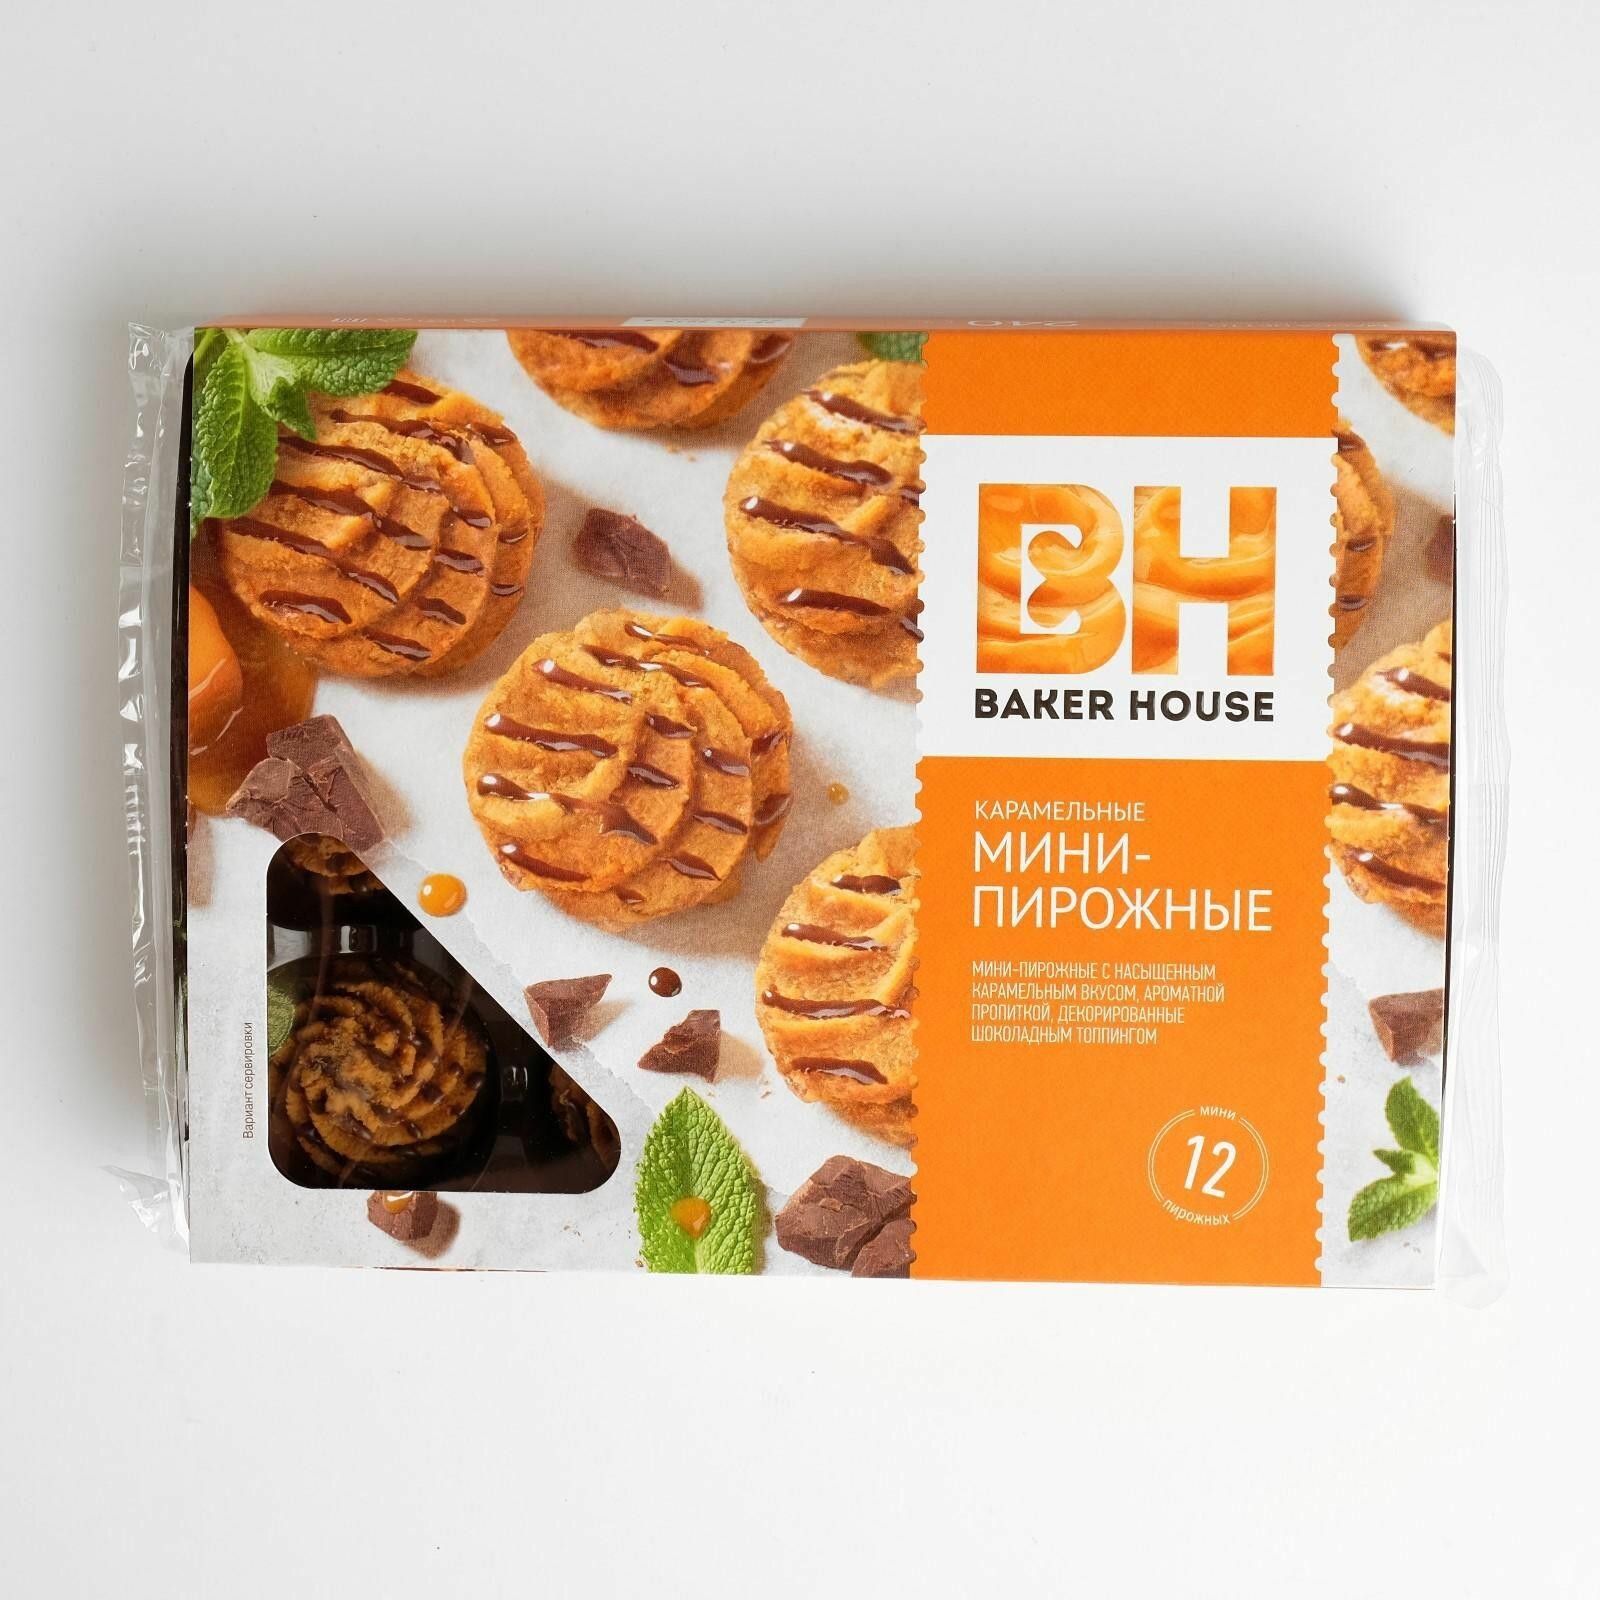 Baker House Мини-пирожные, крошковые, Карамельные, 12 штук в упаковке, 240 гр.